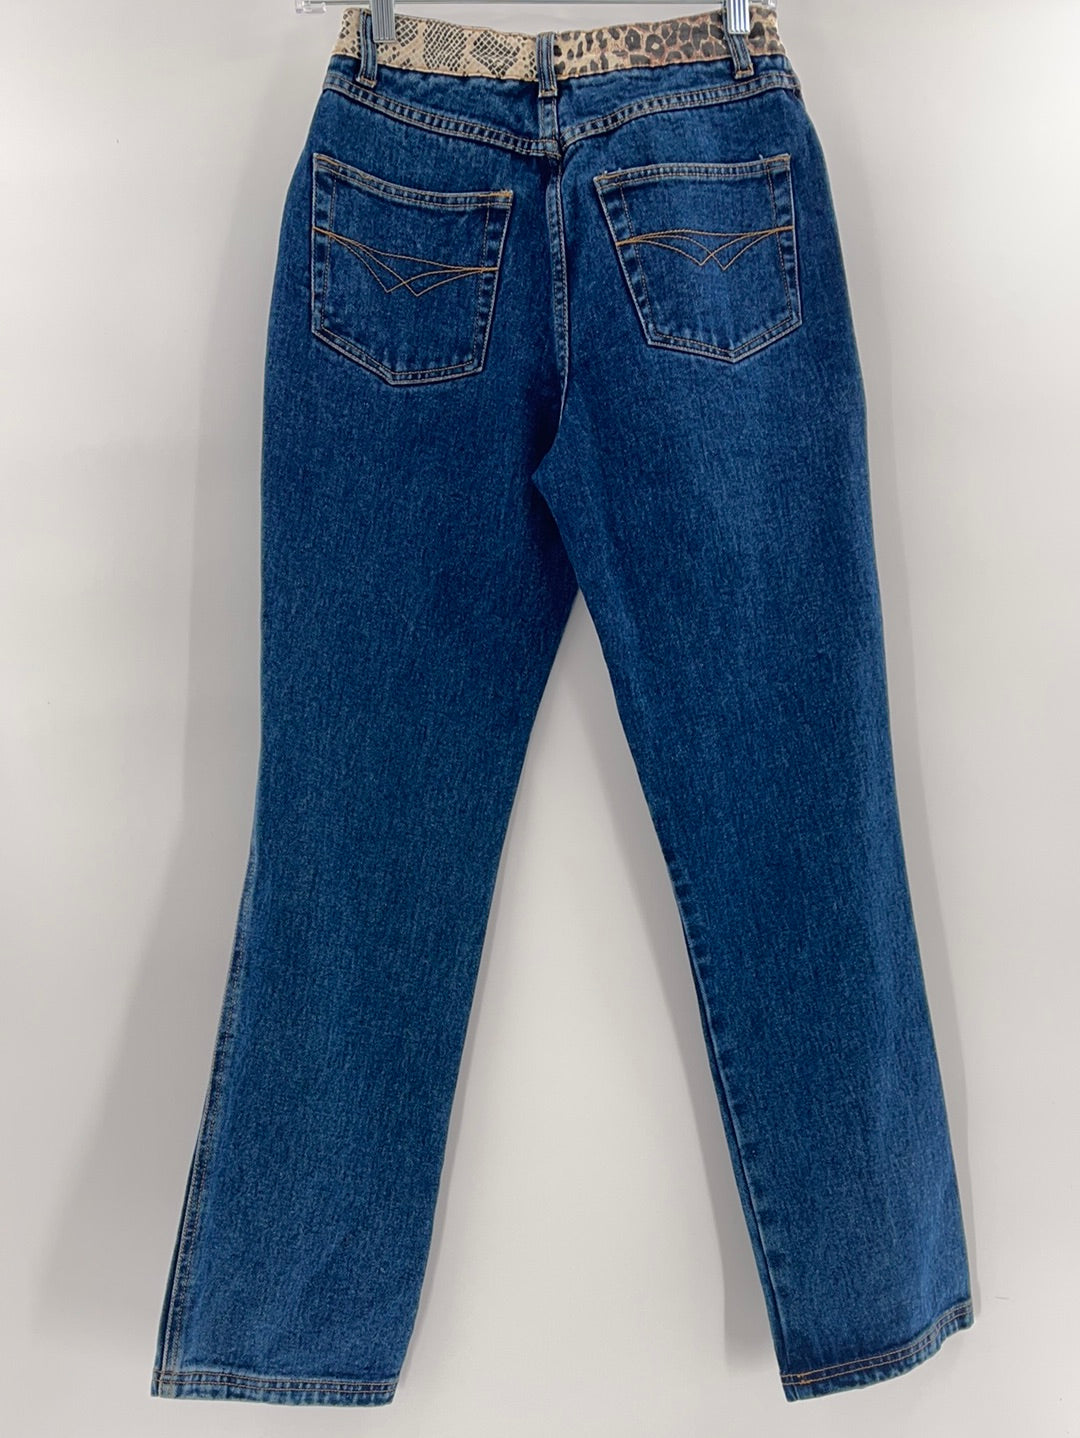 Route 66 Vintage Denim Jeans (Size 3/4)